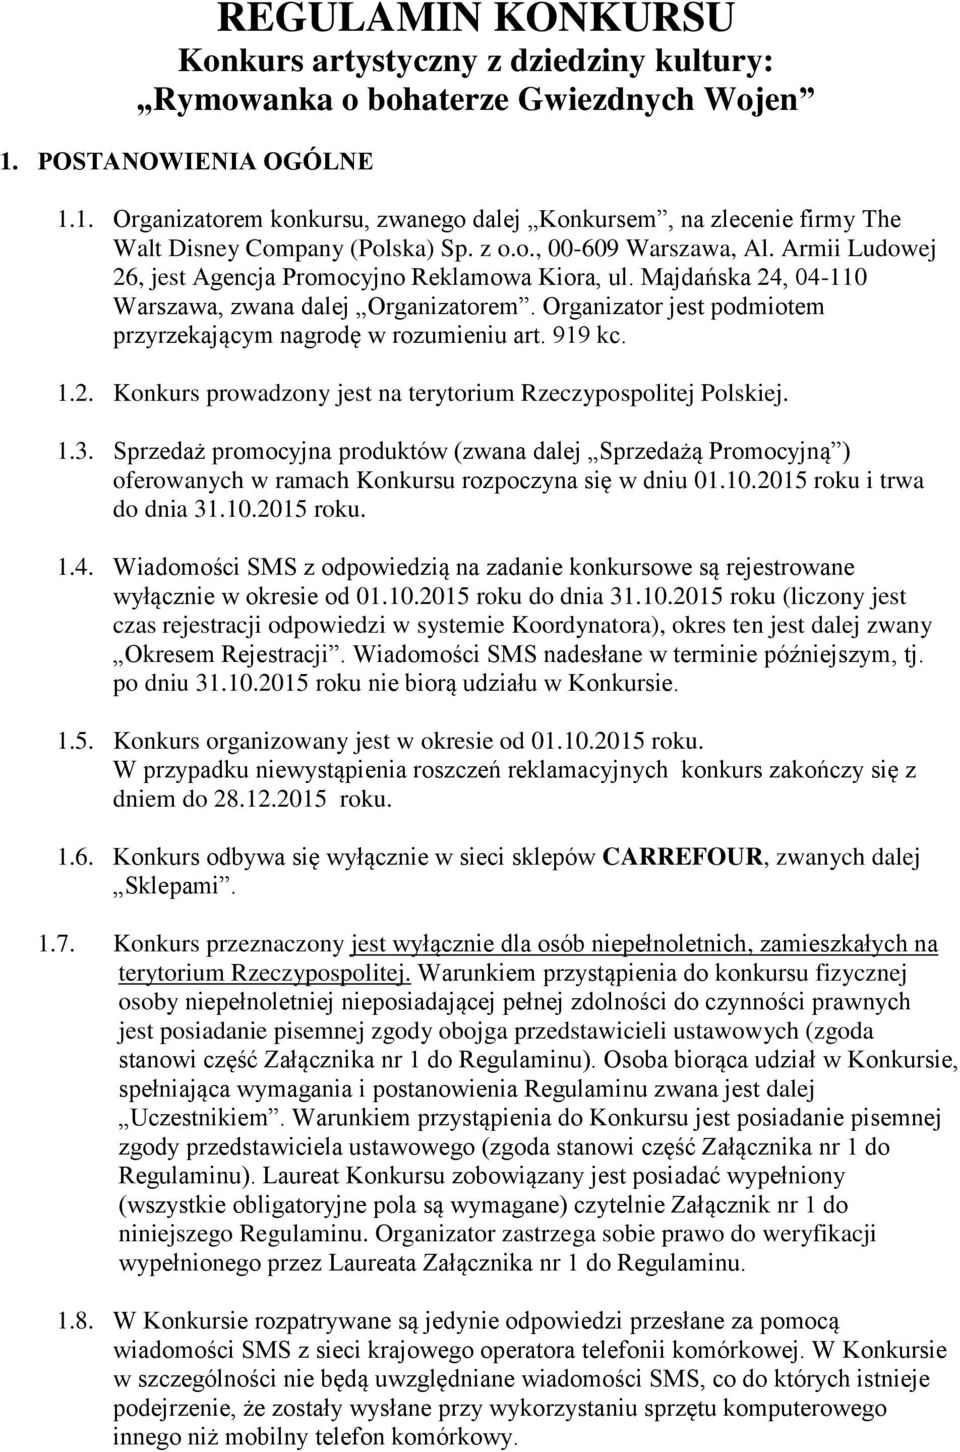 Armii Ludowej 26, jest Agencja Promocyjno Reklamowa Kiora, ul. Majdańska 24, 04-110 Warszawa, zwana dalej Organizatorem. Organizator jest podmiotem przyrzekającym nagrodę w rozumieniu art. 919 kc. 1.